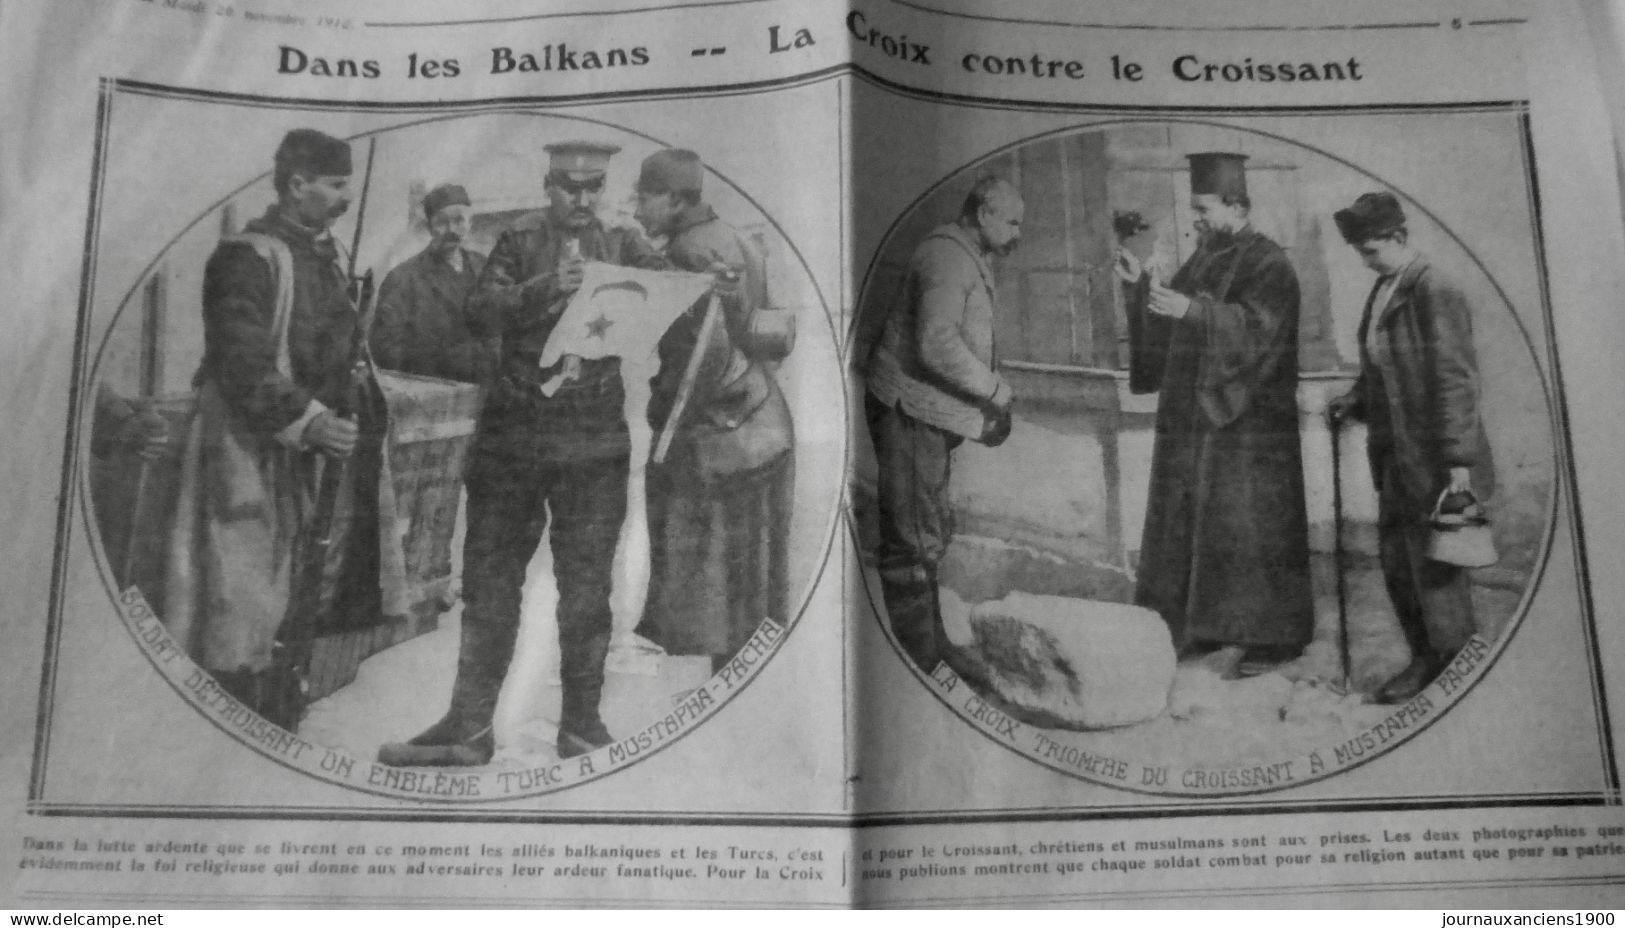 1912 EXCELSIOR ARTICLE DE PRESSE BALKAN CROIX CROISSANT RELIGION 1 JOURNA ANCIEN - Glasdias